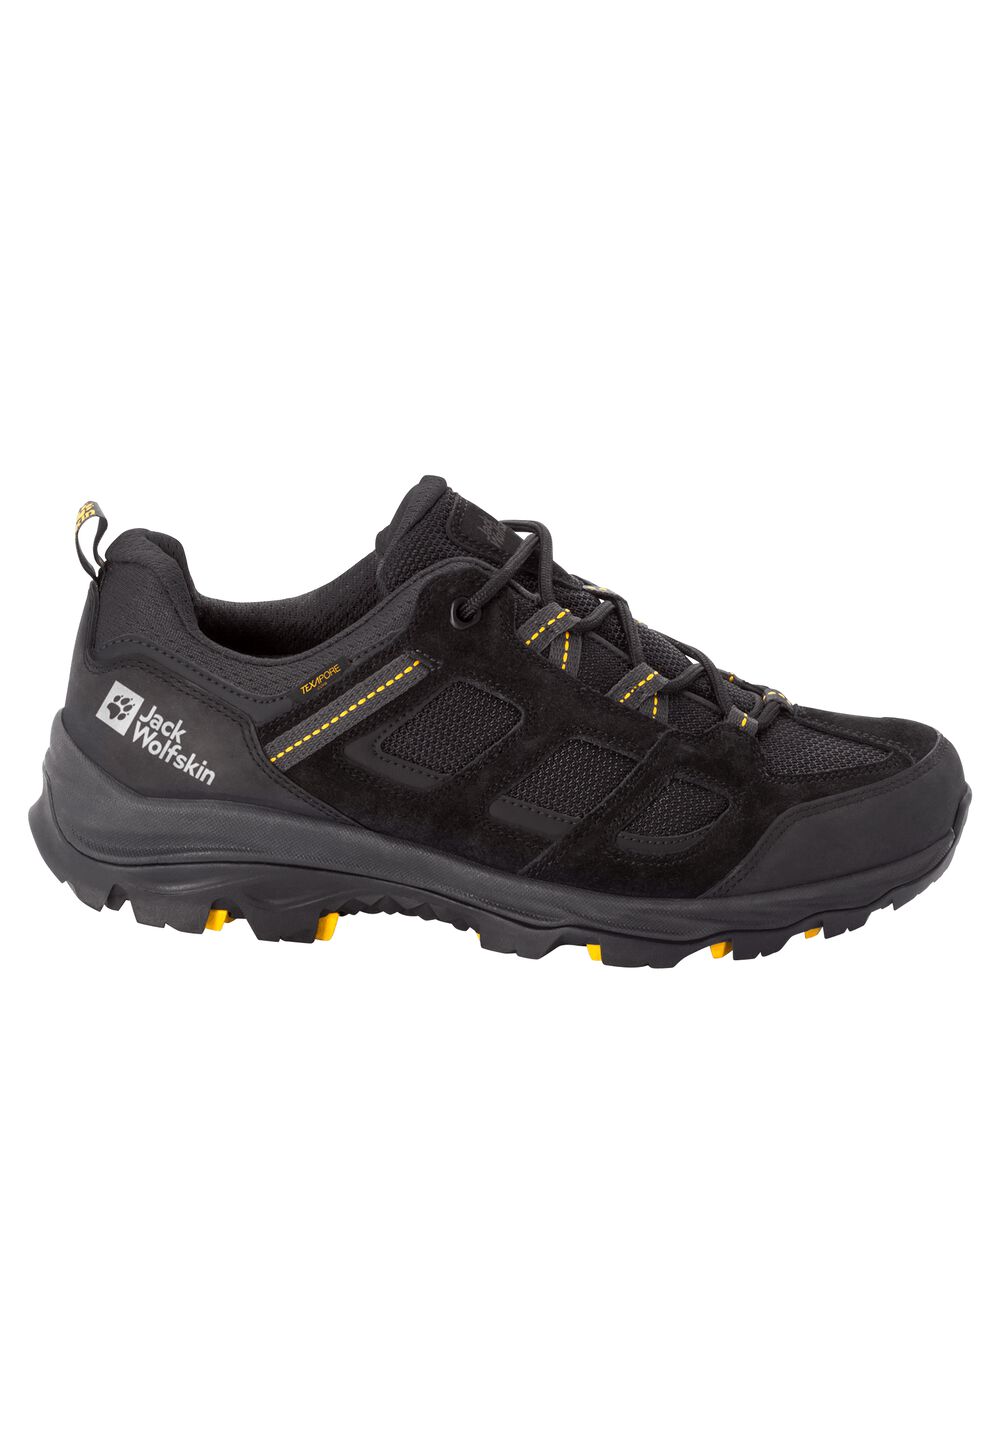 Chaussures de randonnée imperméables hommes Vojo 3 Texapore Low Men 12,5 noir black / burly yellow X